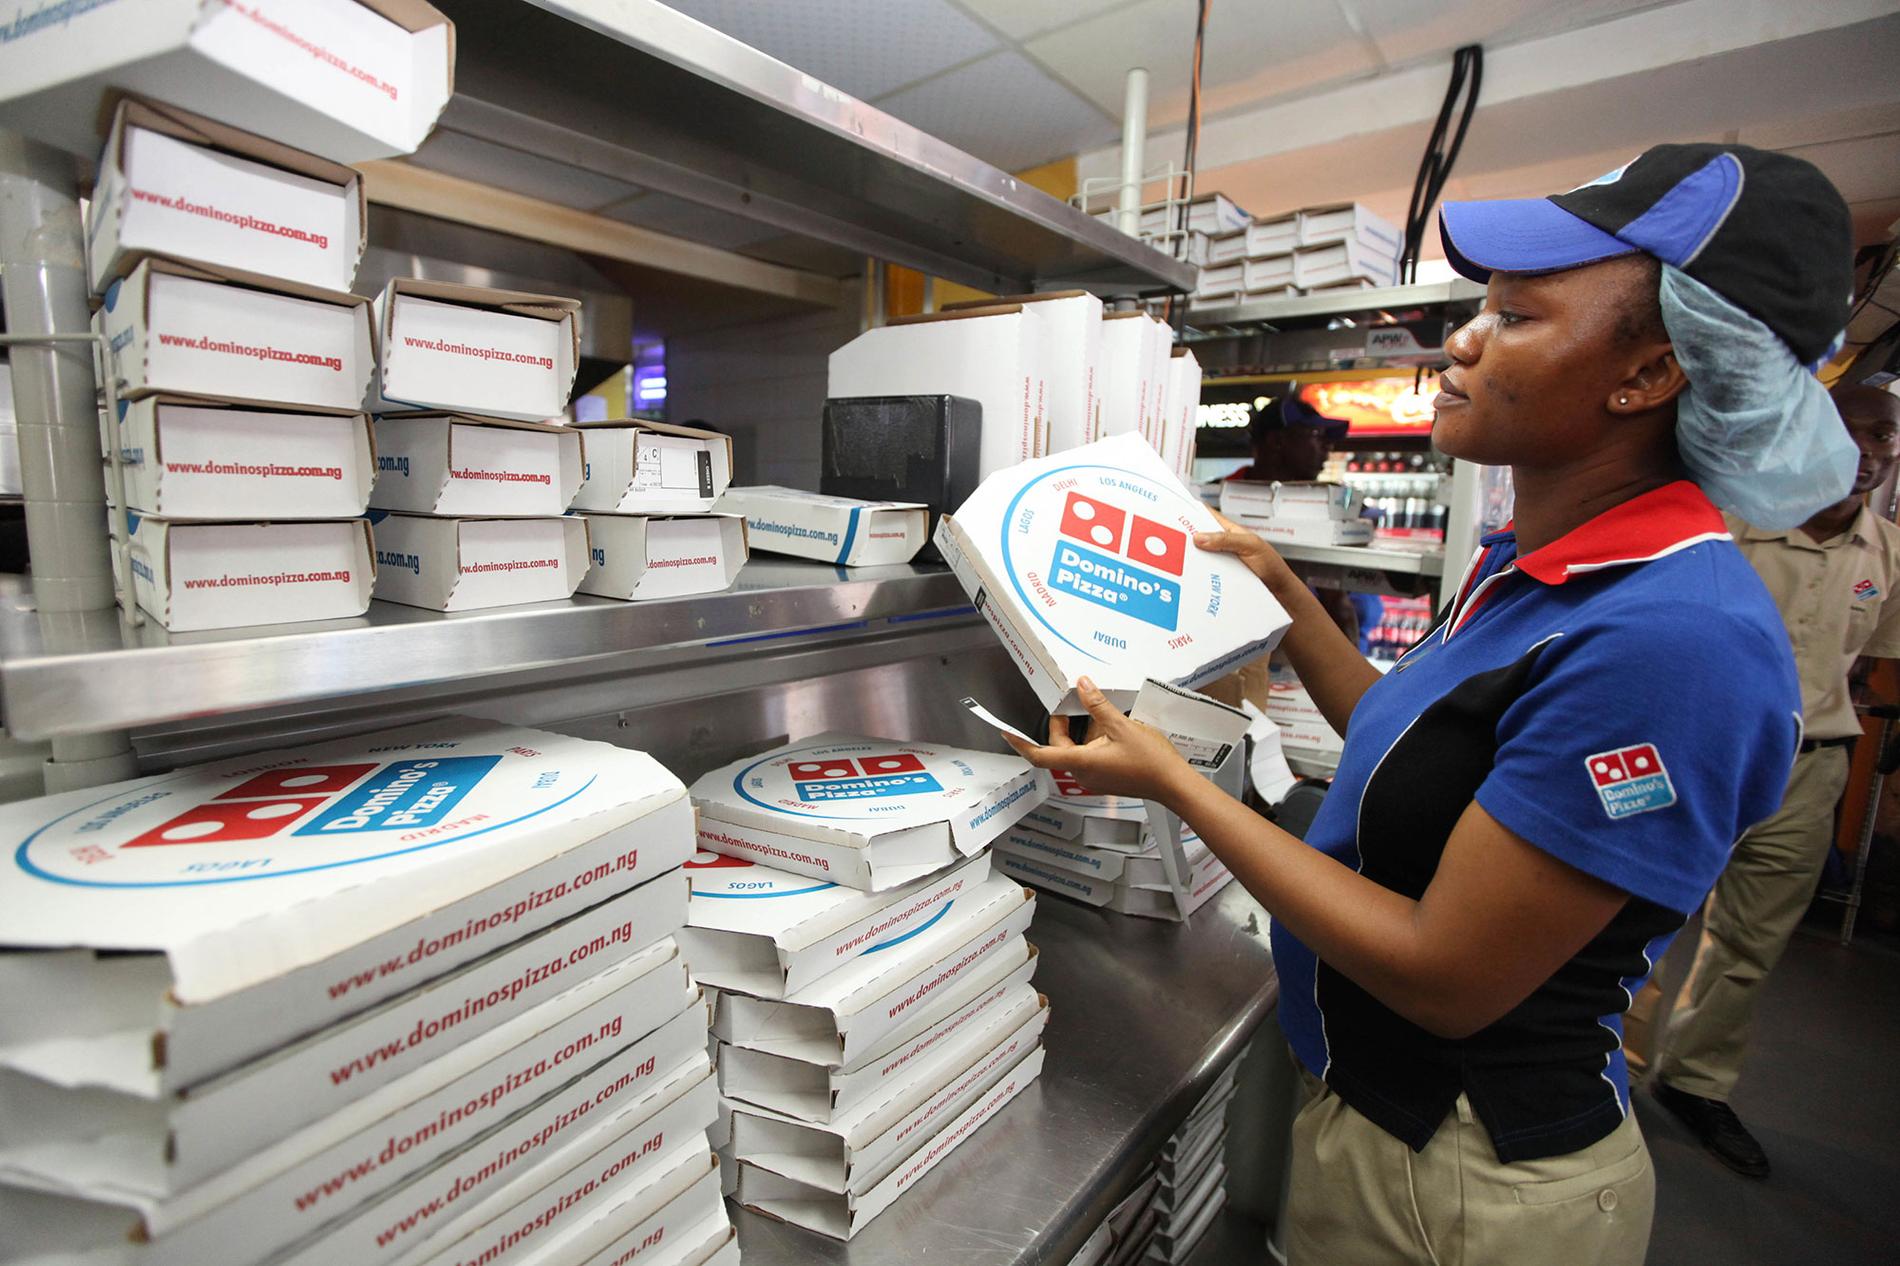 Pizzakjeden Domino’s har 13.000 restauranter verden over. Her fra en restaurant i Lagos i Nigeria. Den 11. september skal selskapet bygge om tre restauranter i distriktet, så følger resten etter neste år.